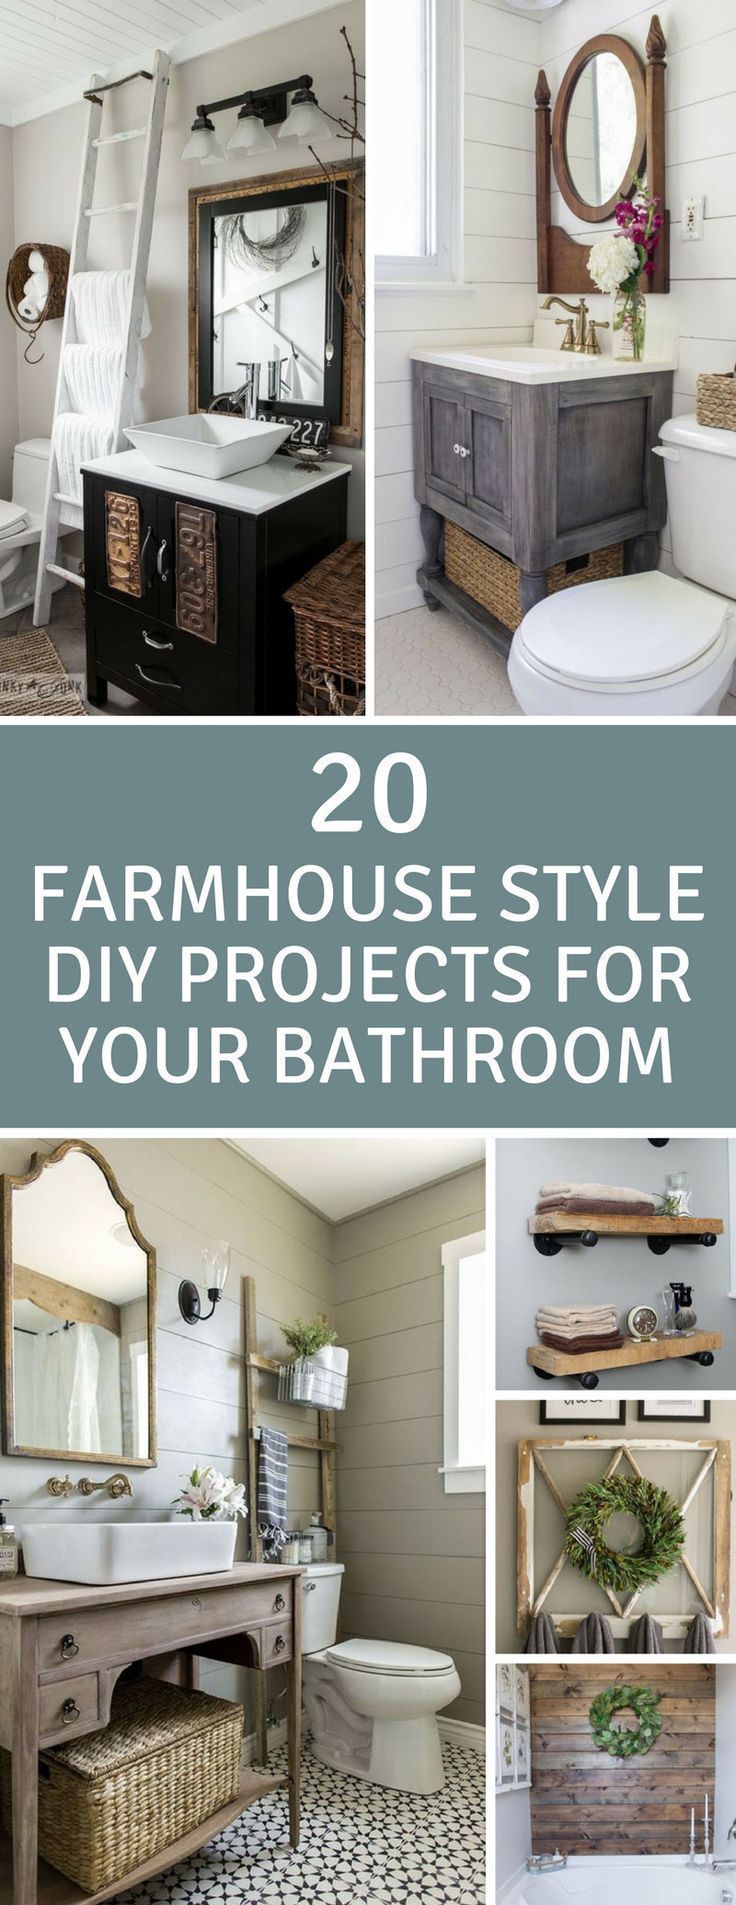 20 Fabulous Farmhouse DIY Projects to Makeover Your Bathroom Fixer Upper Style - 20 Fabulous Farmhouse DIY Projects to Makeover Your Bathroom Fixer Upper Style -   16 diy Bathroom deko ideas